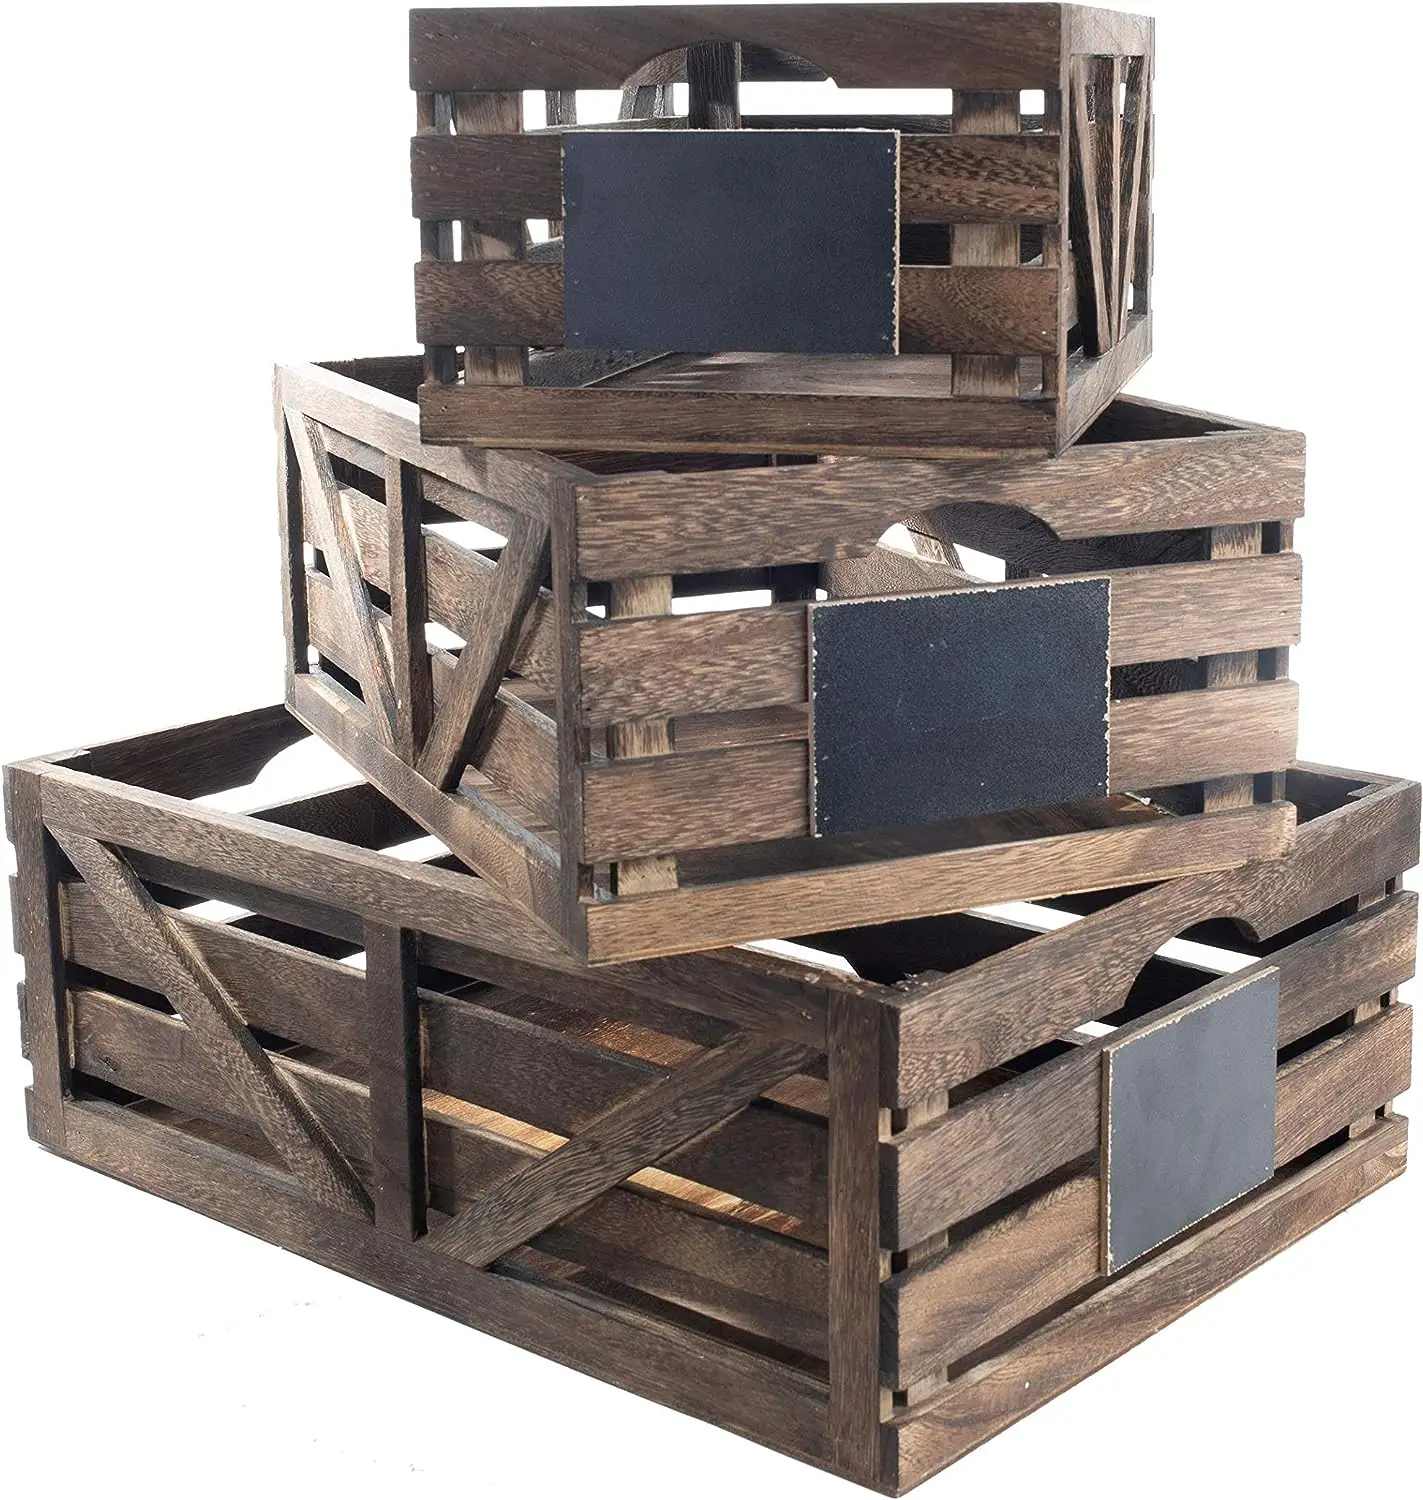 

Деревянные ящики для домашнего декора, деревянные ящики для демонстрации, деревянные ящики для поделок, декоративные деревянные ящики, деревянные ящики для хранения